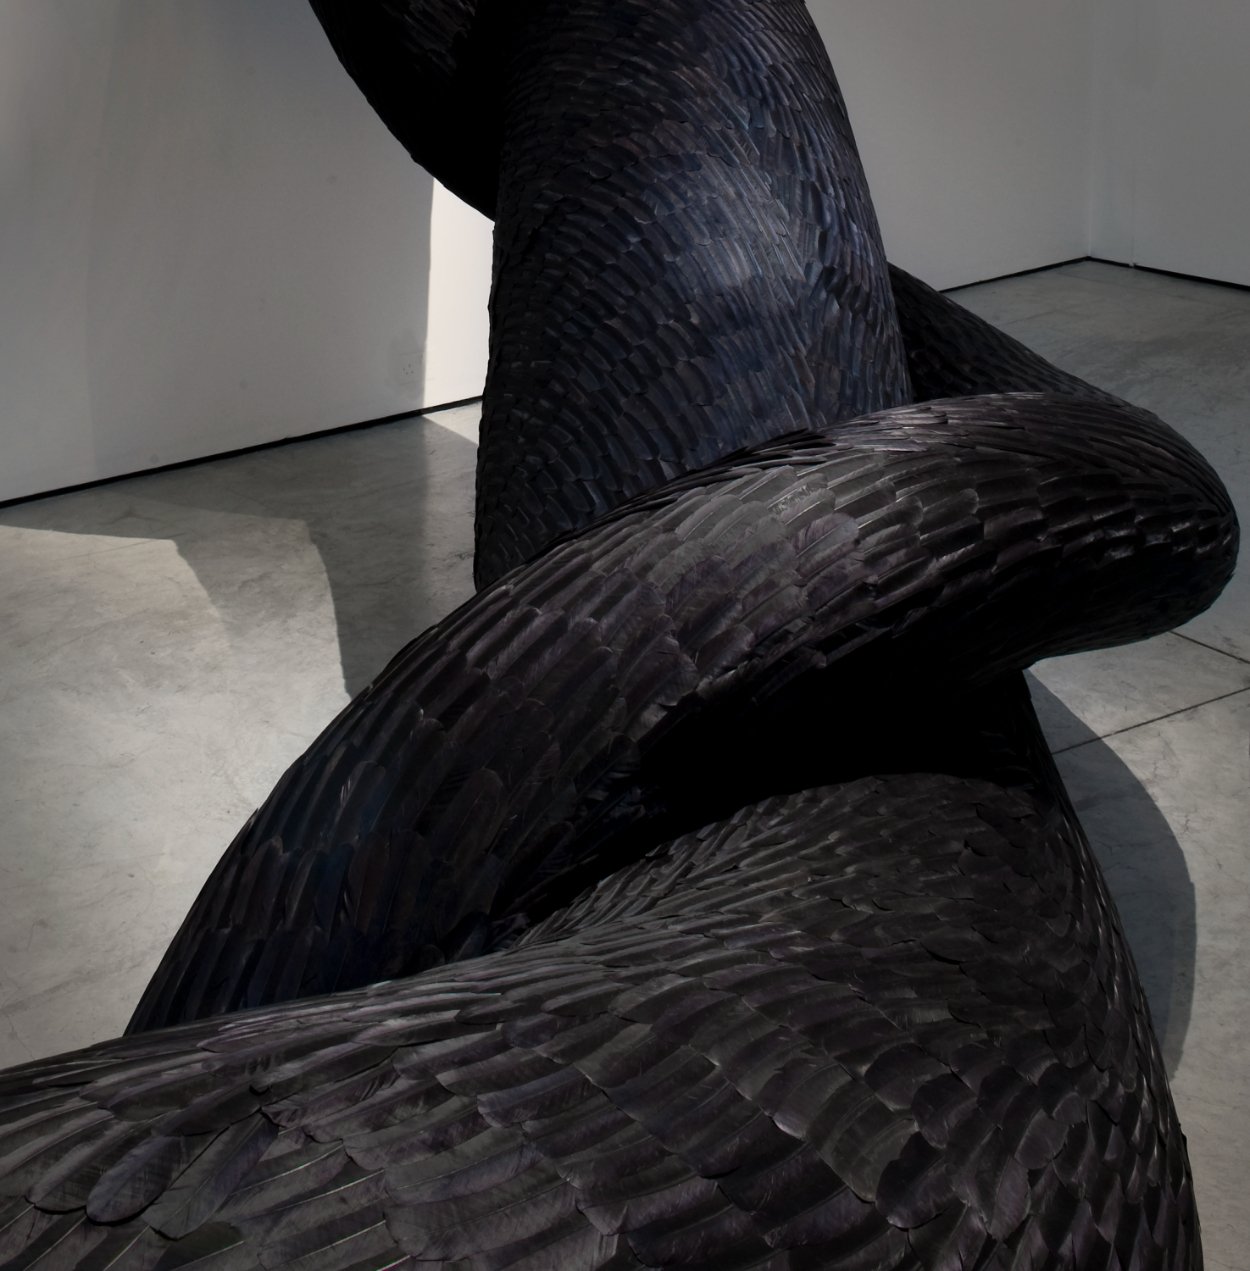  Kate MccGwire  GYRE  (detail), 2012 Installation multimédia avec des plumes de corbeau 275 x 770 x 415 cm 